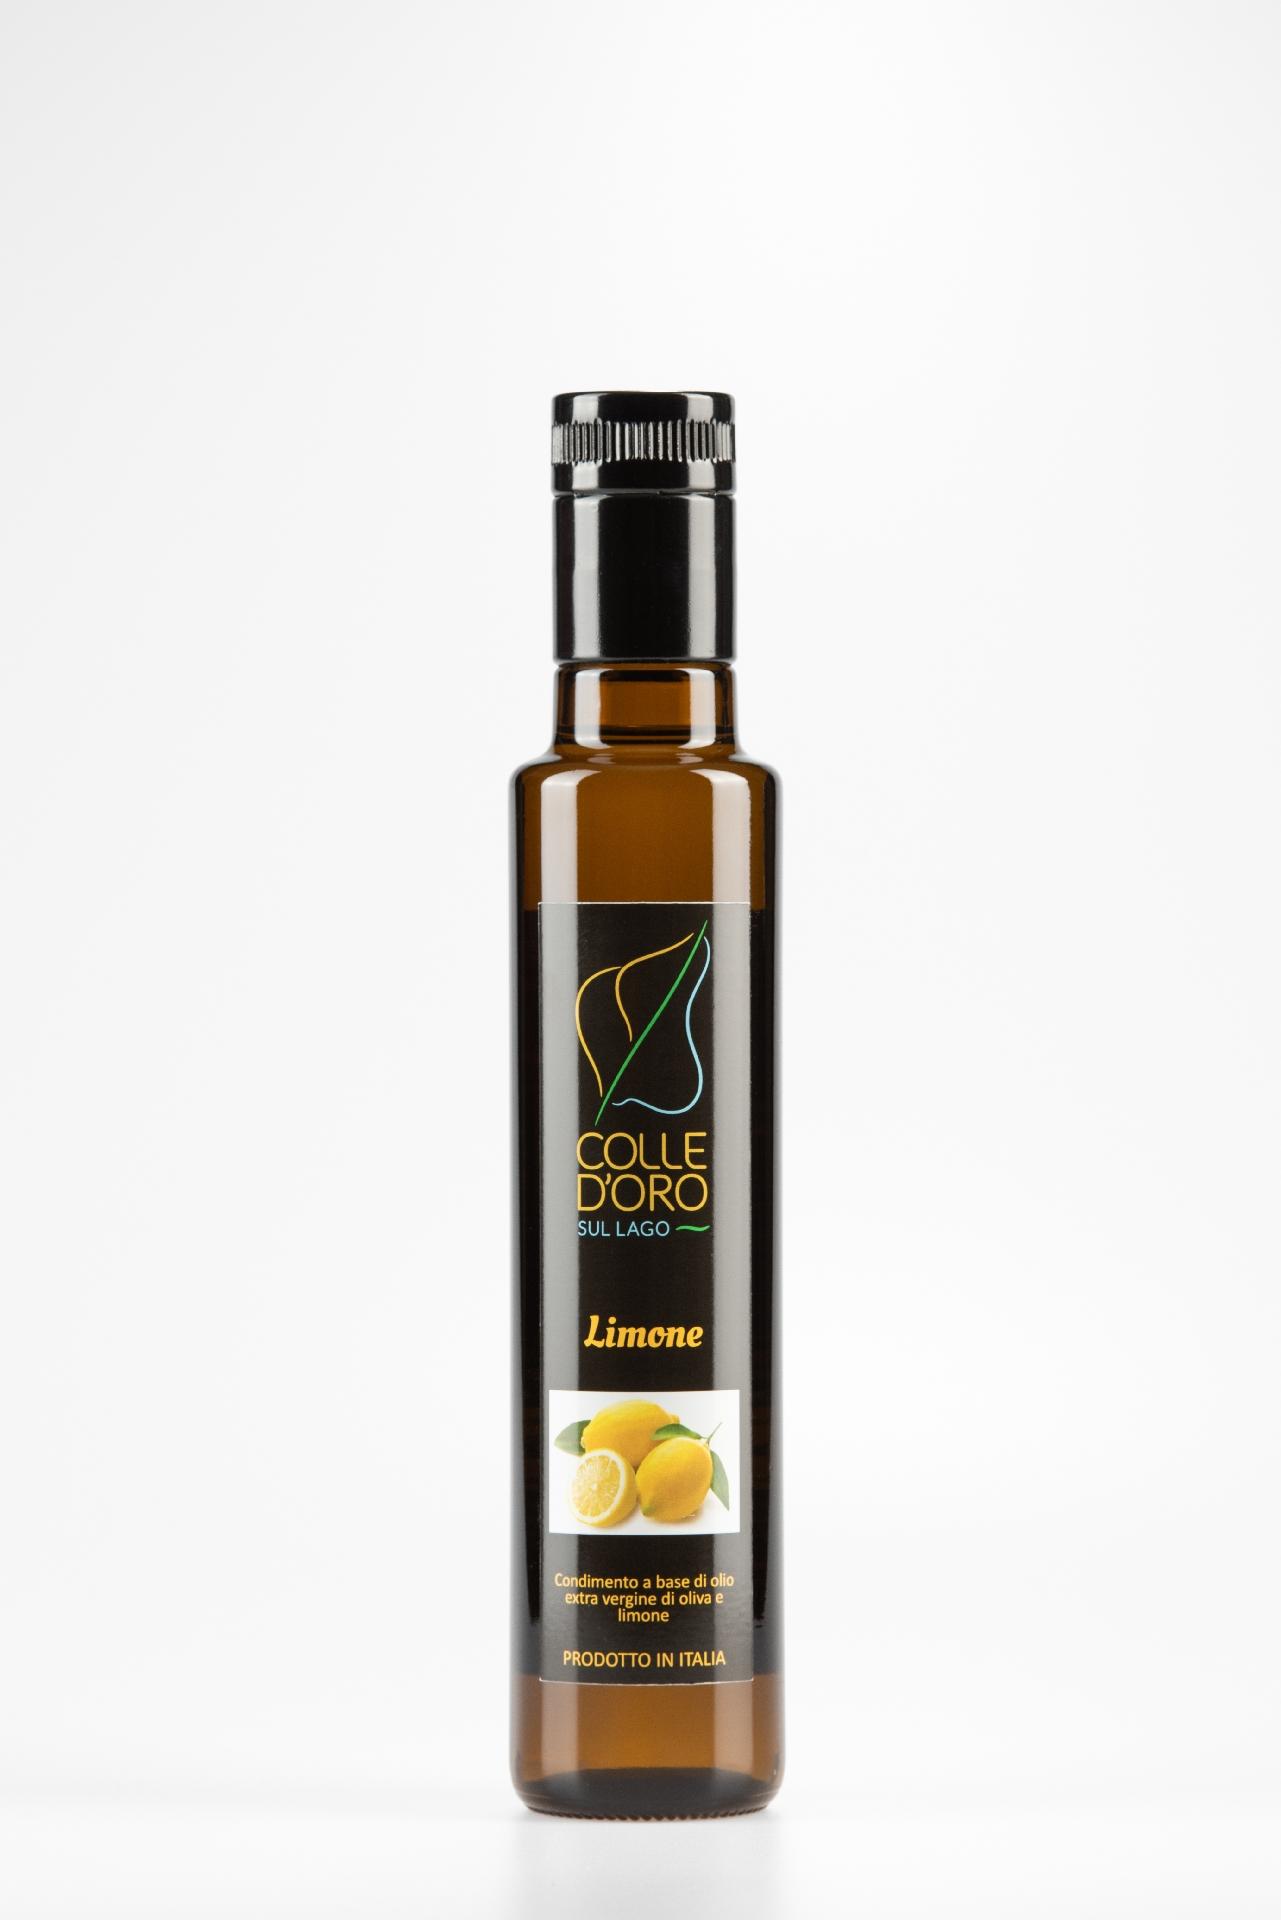 Cod. 08 Condimento a base di olio extra vergine di oliva (90%) e limoni (10%)